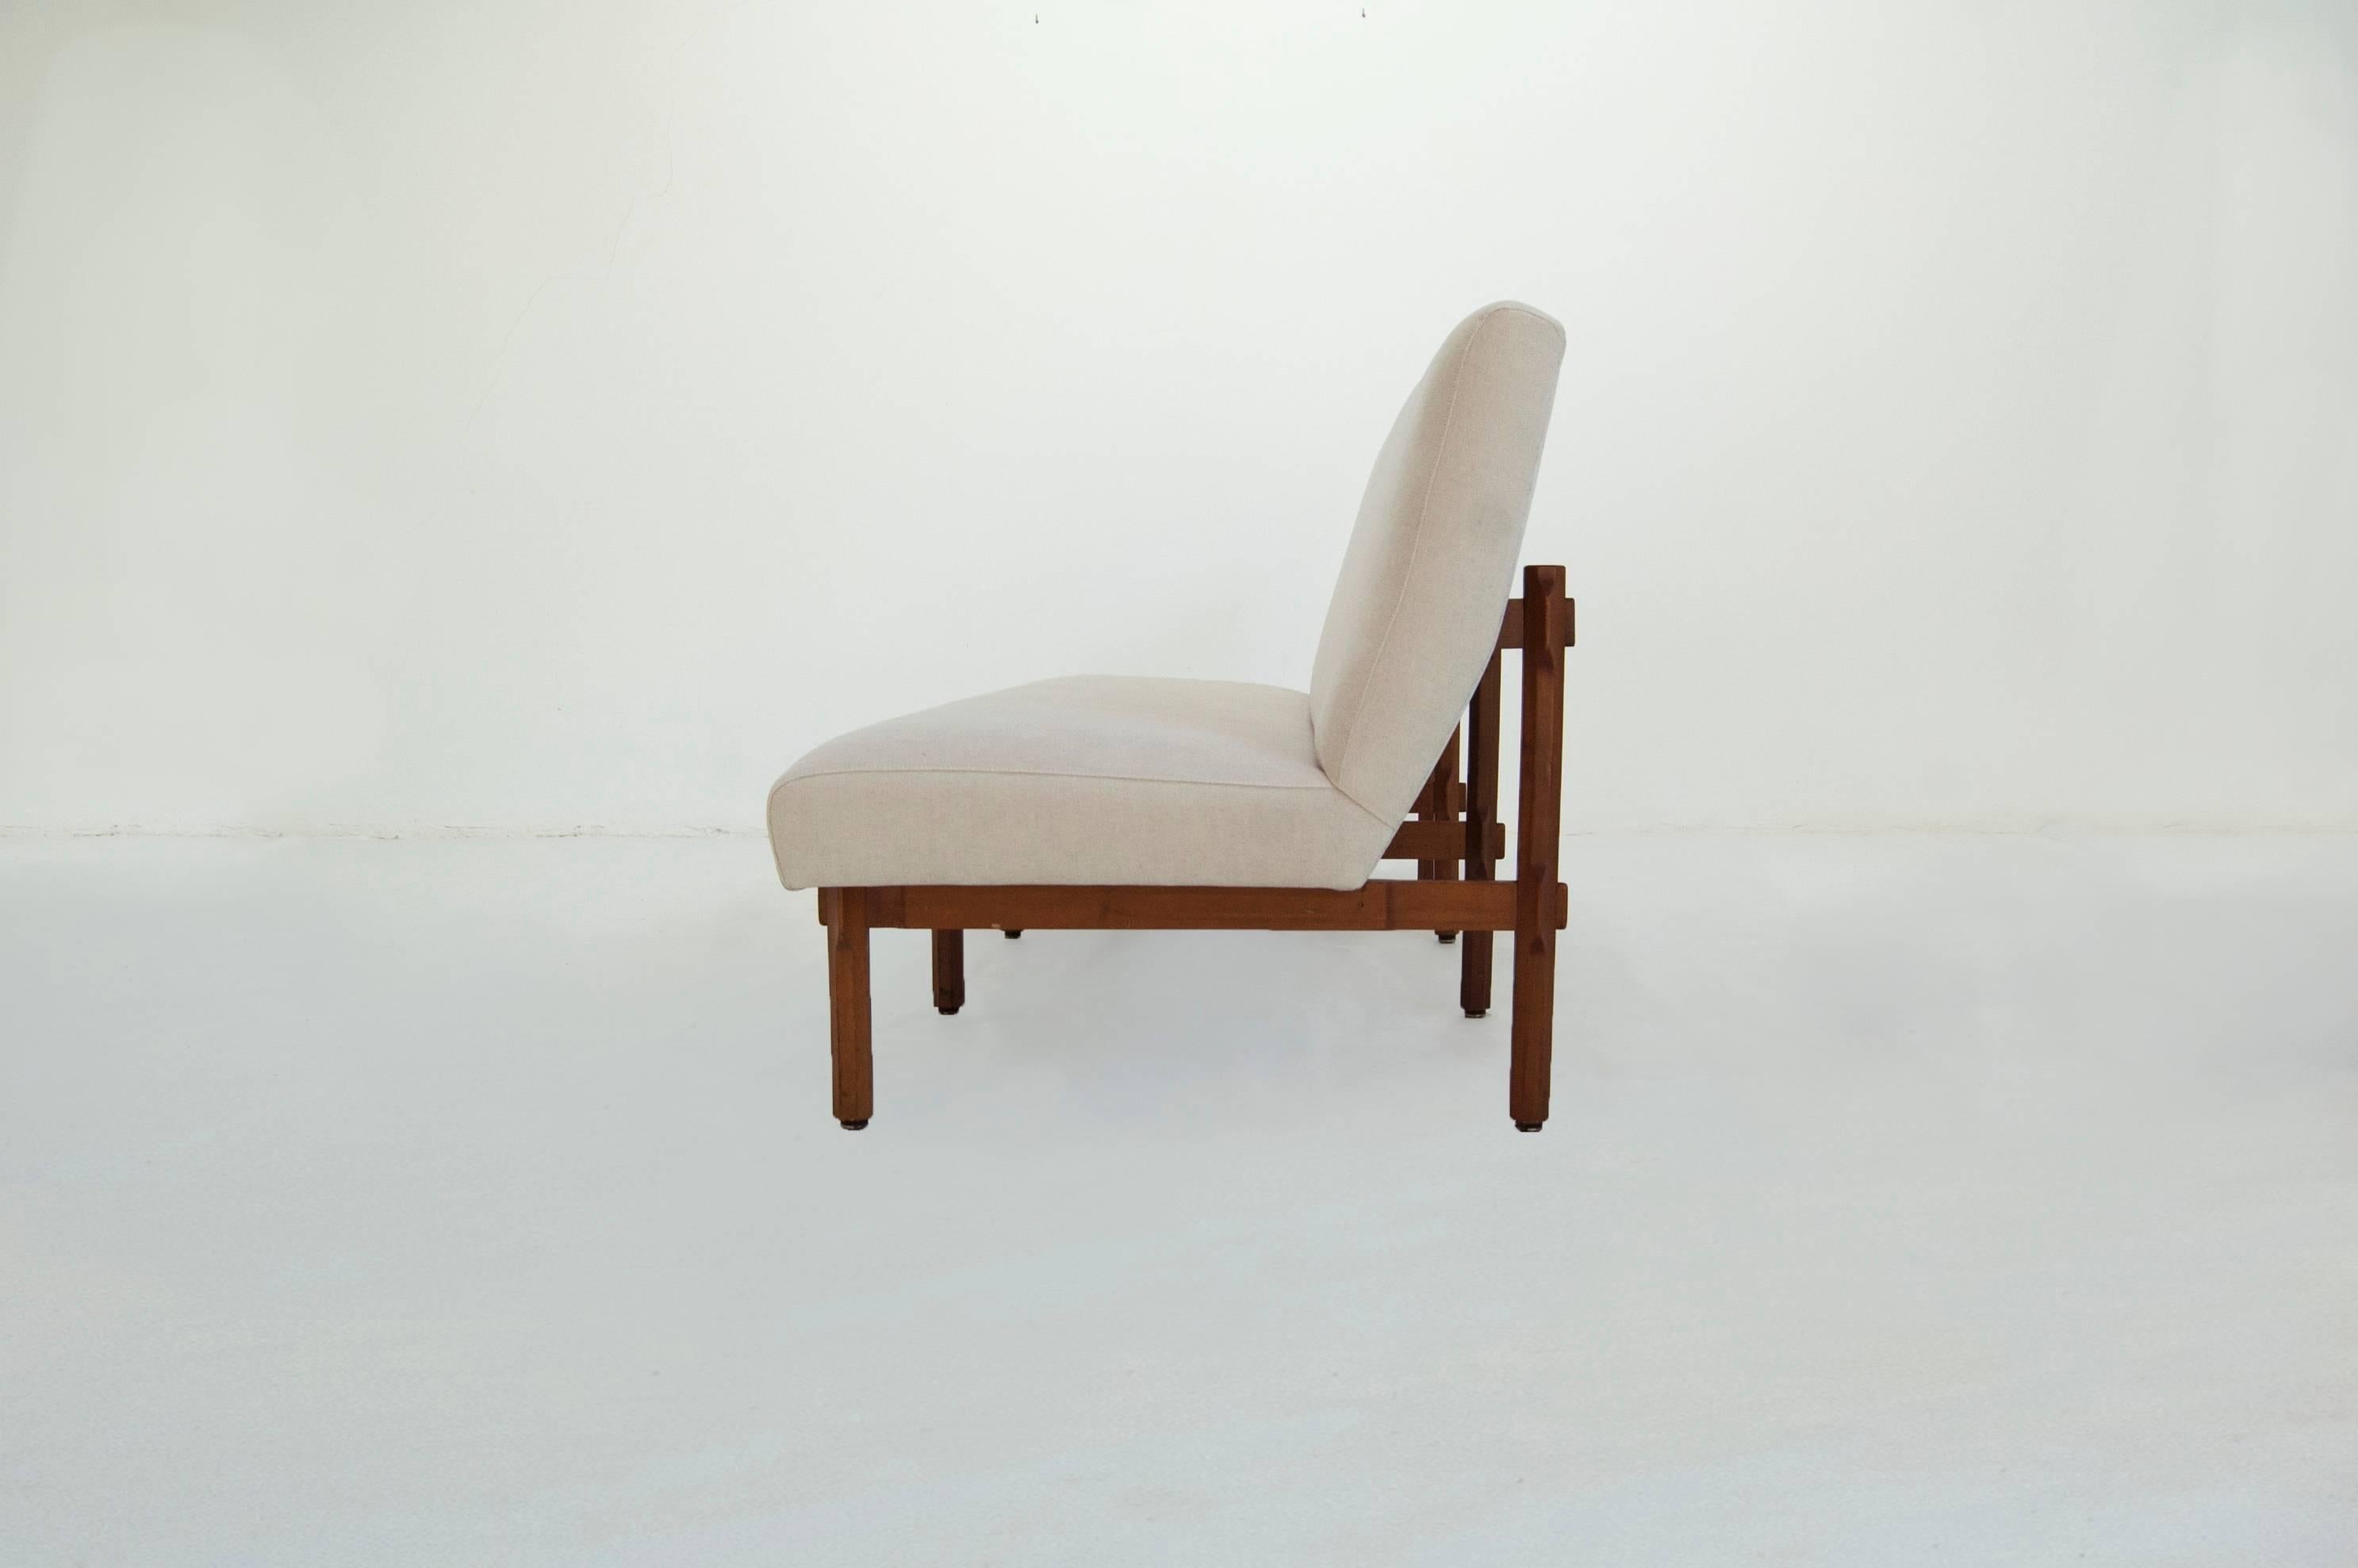 Ico Parisi (1916–1996).

Sofa model 